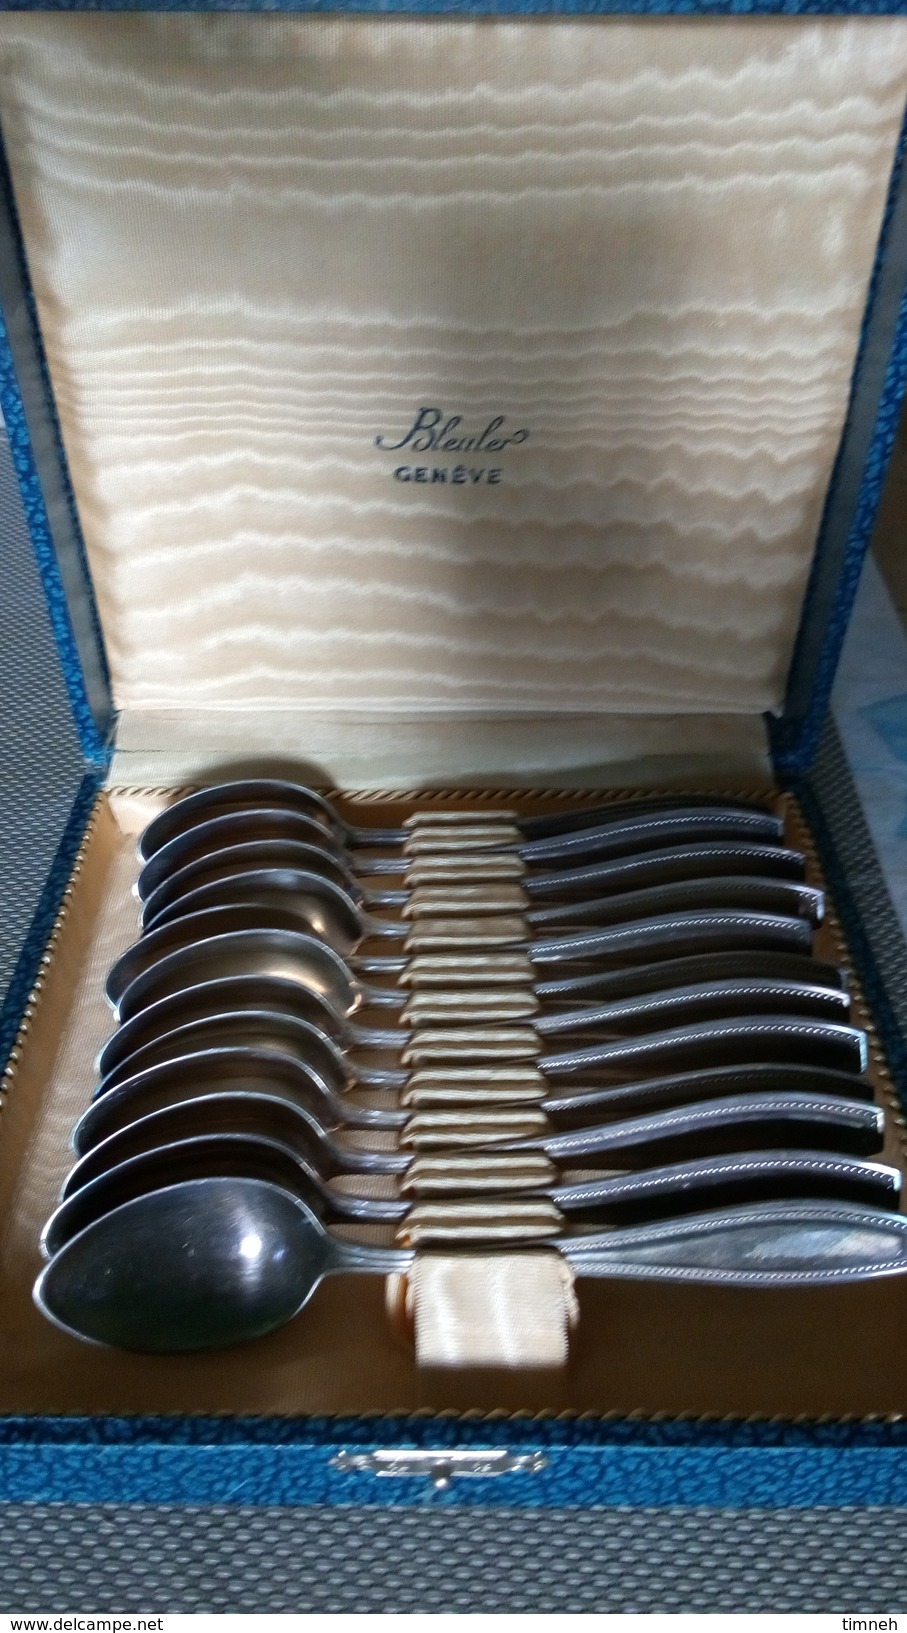 Coffret BLEULER GENEVE - 12 cuillères à dessert métal argenté - decor classique "pointillés"